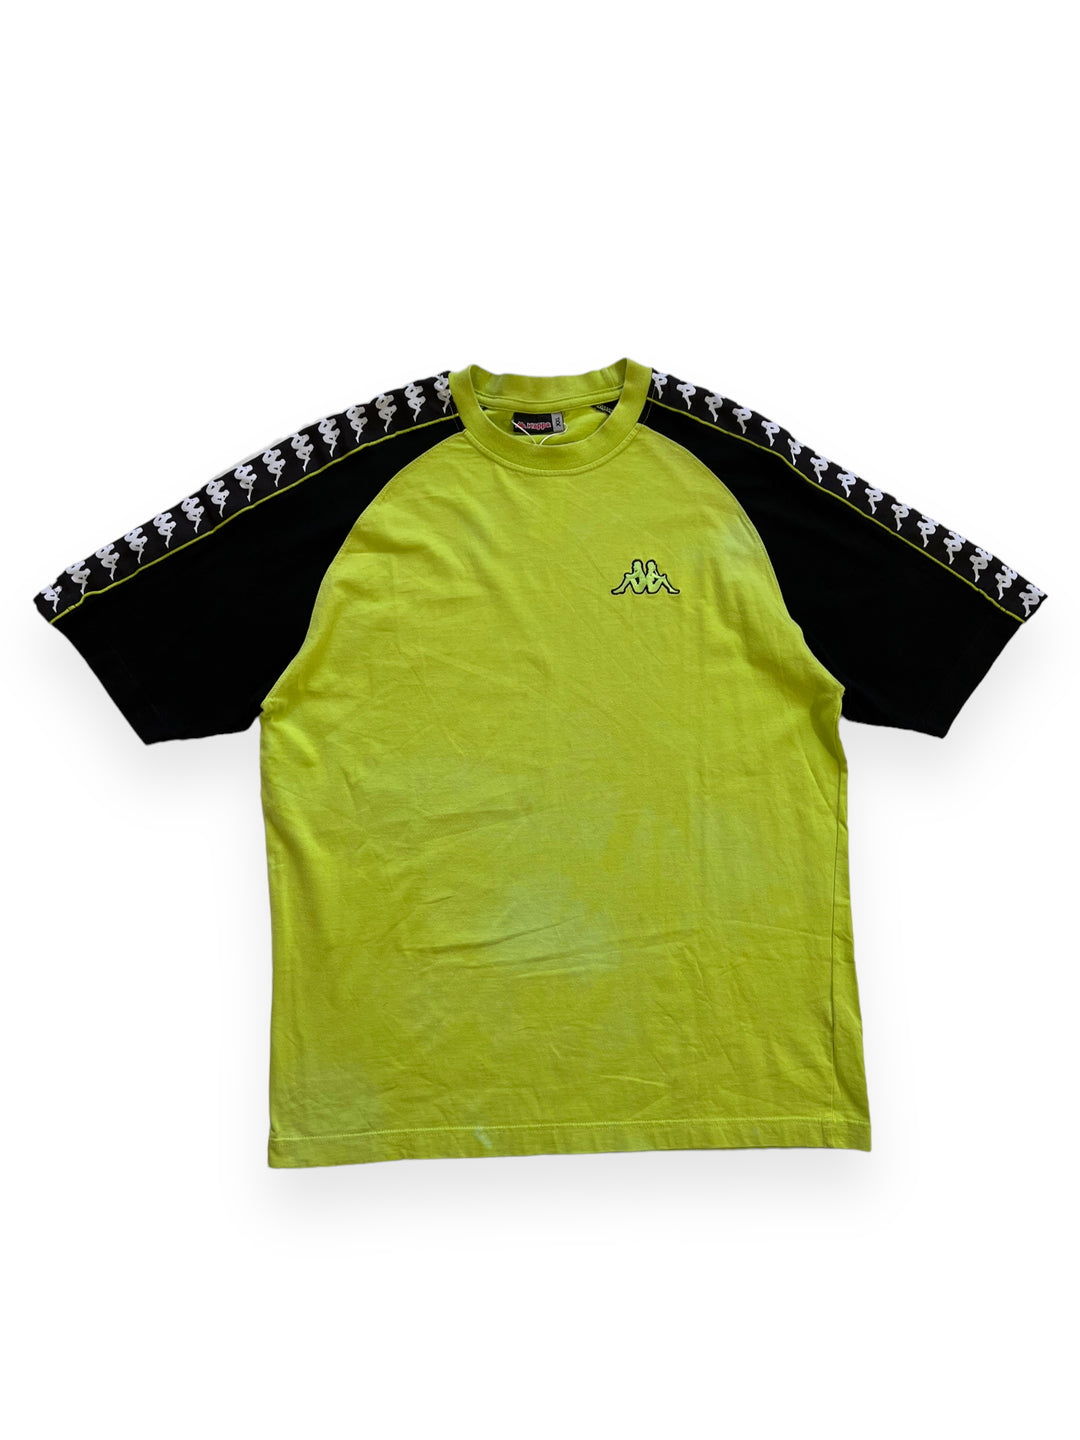 Kappa T-Shirt Men’s XXL